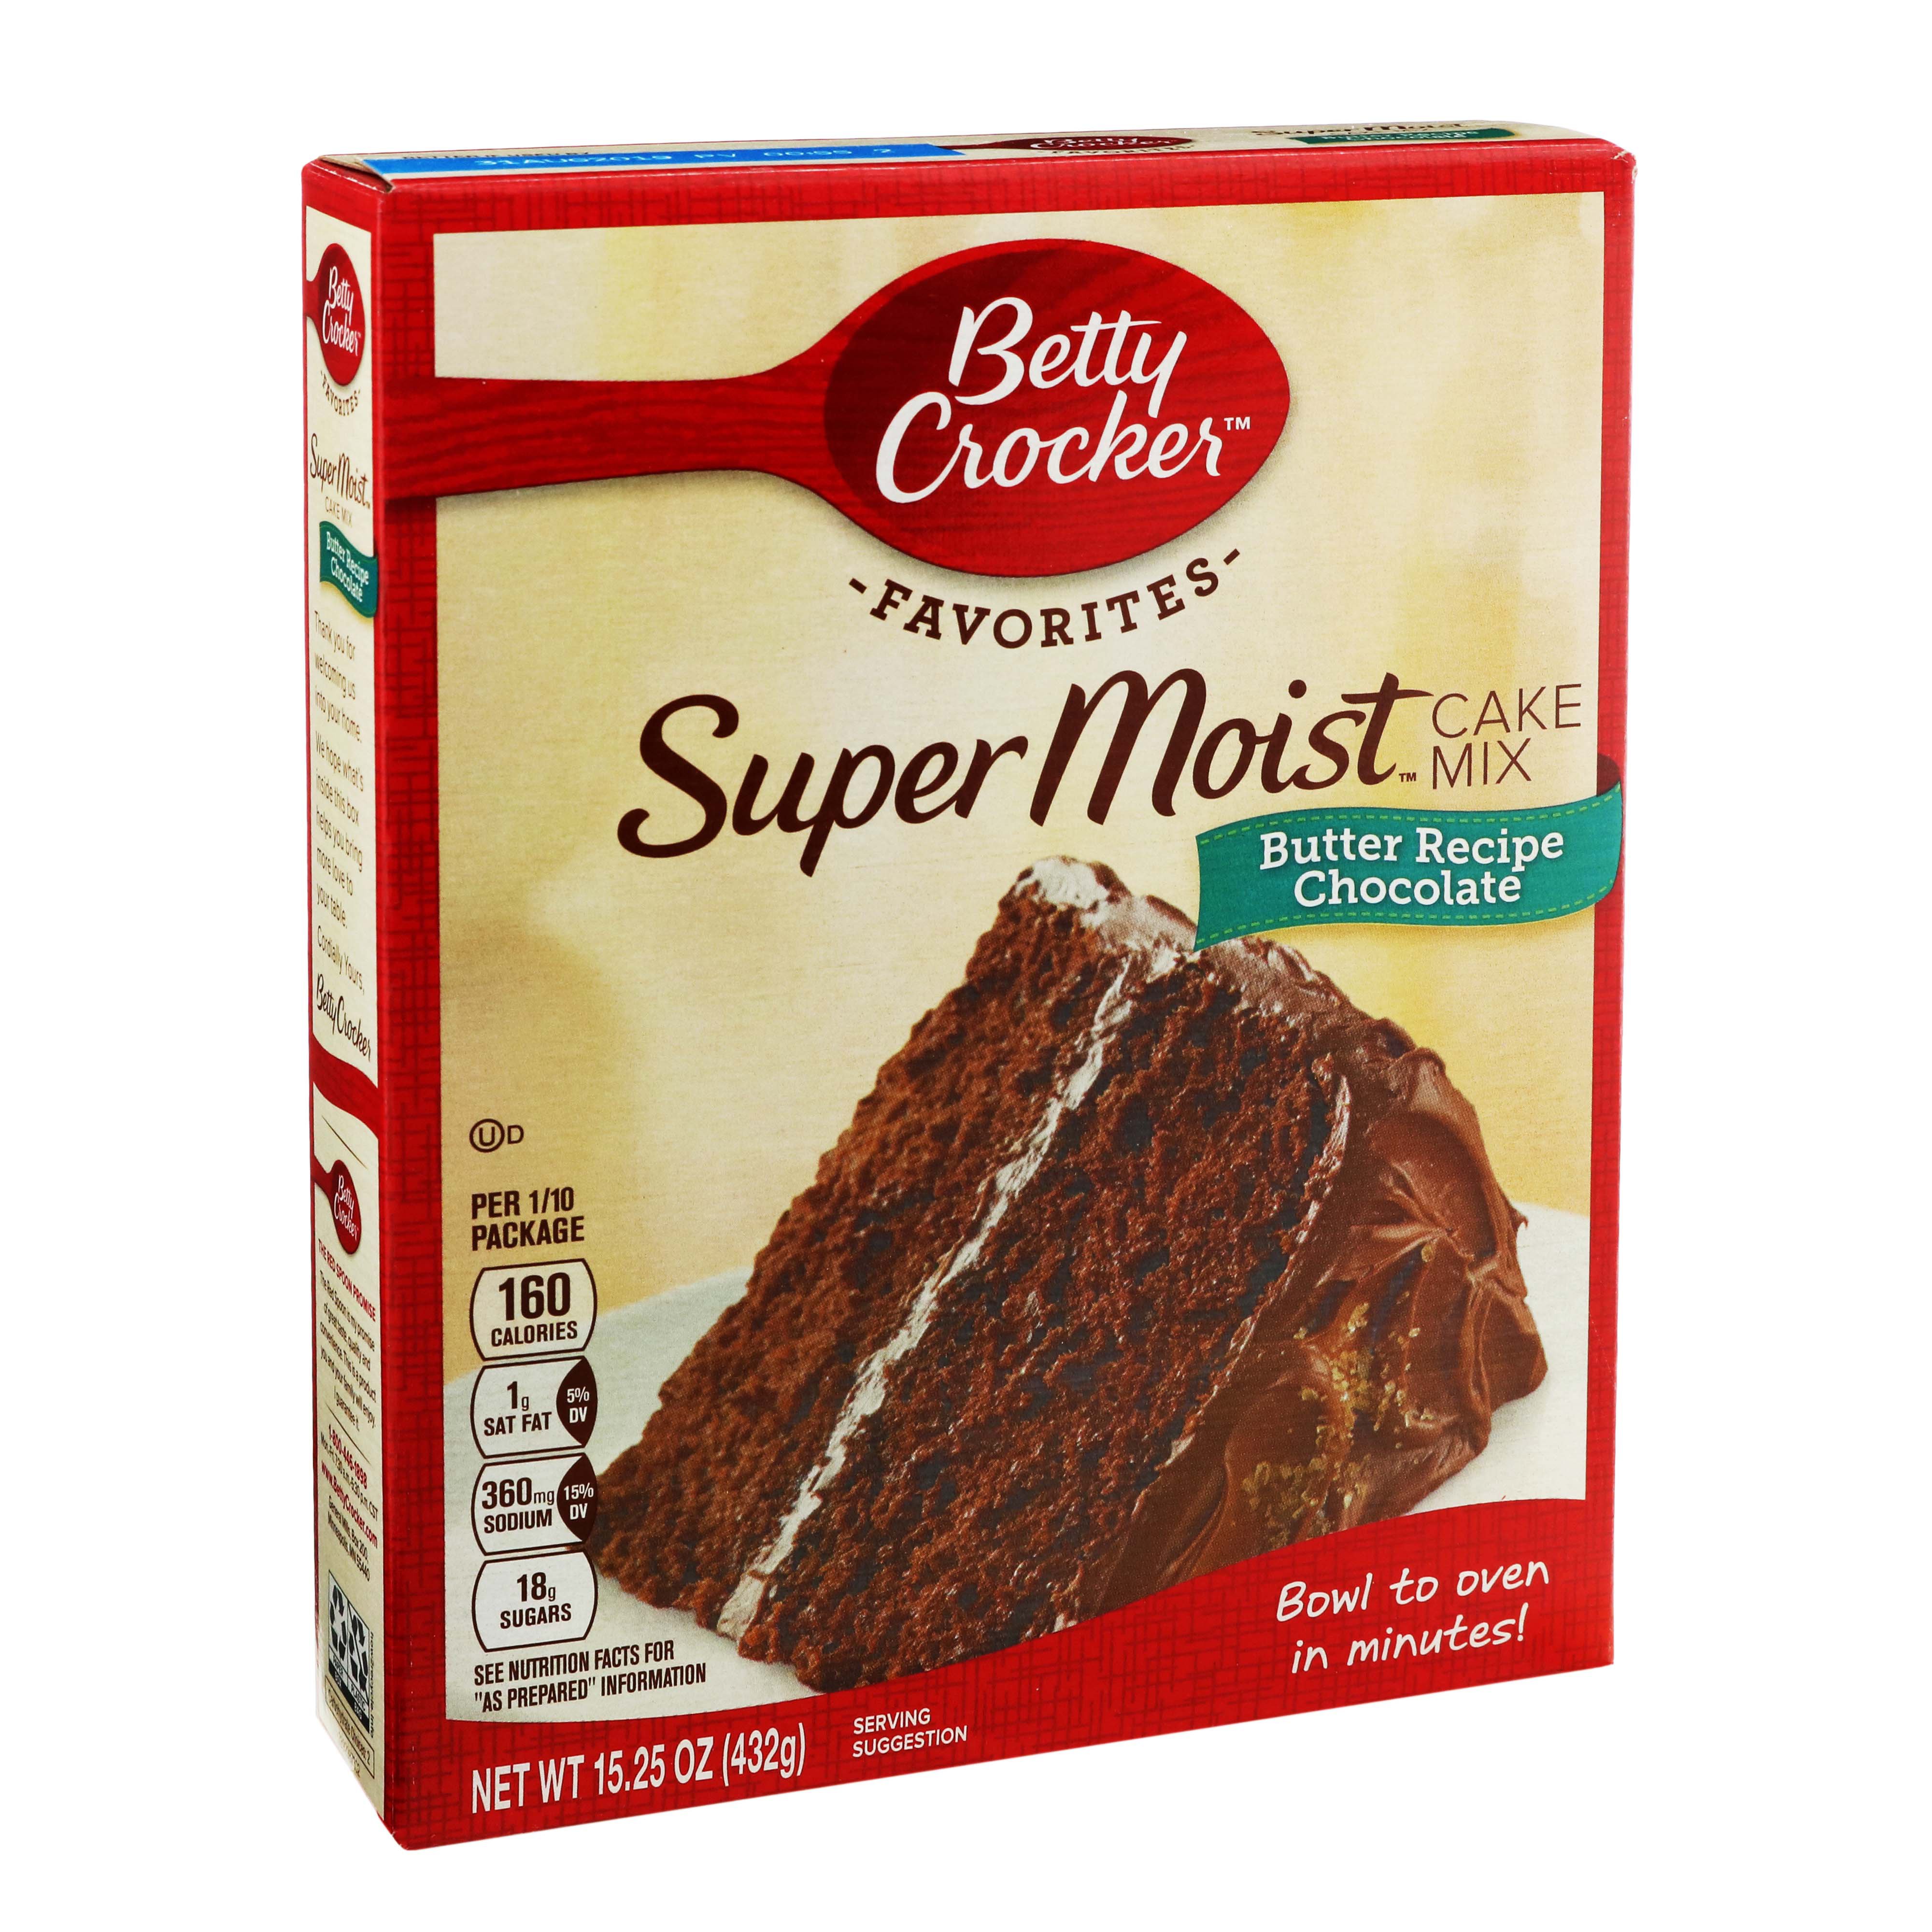 Betty Crocker Super Moist Chocolate Butter Recipe Cake Mix Shop Baking Mixes At H E B